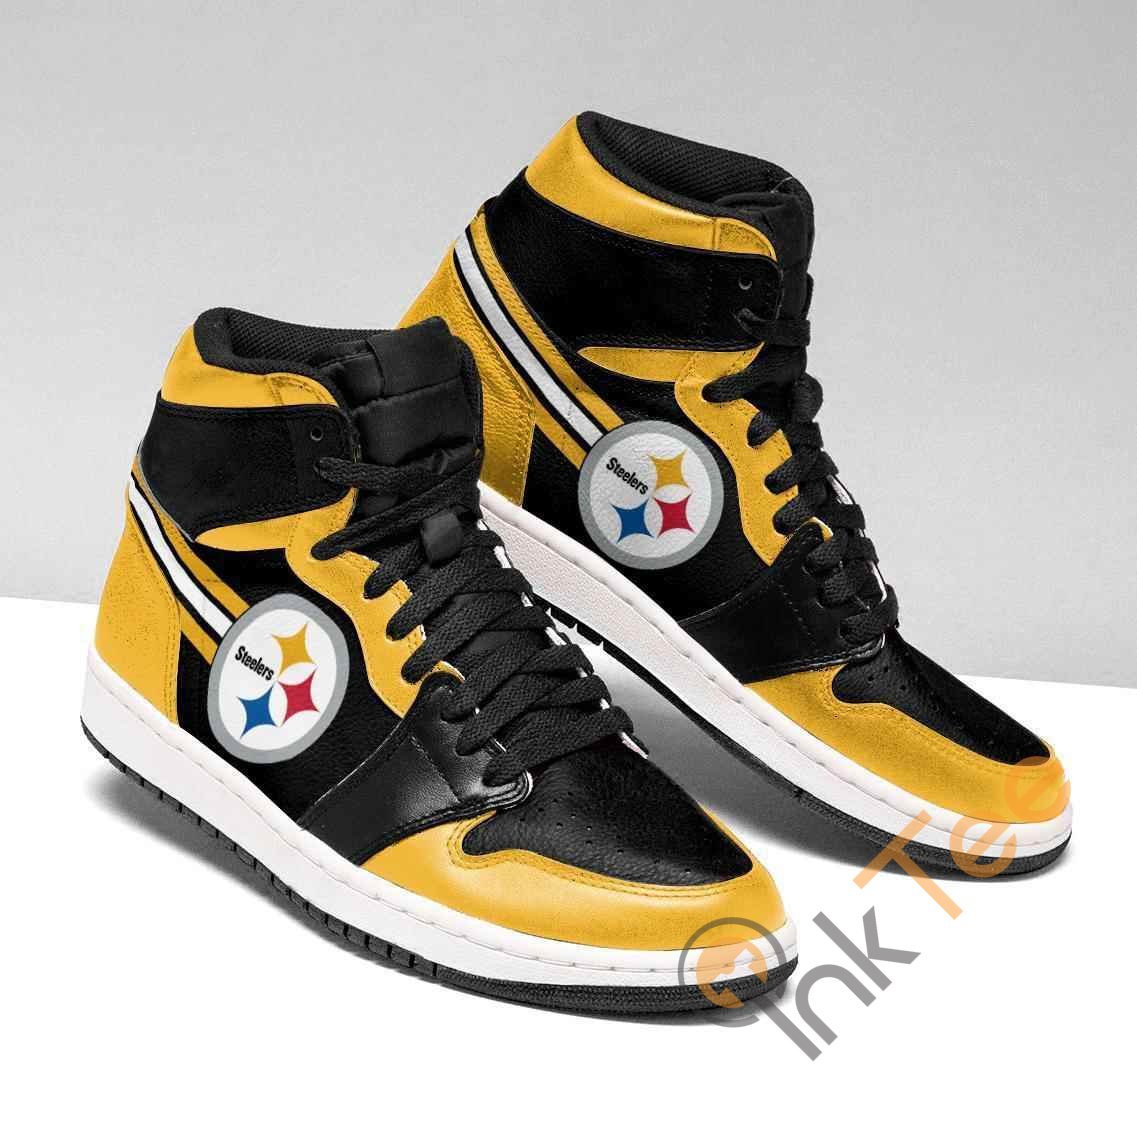 Pittsburgh Steelers Nfl Air Jordan Shoes